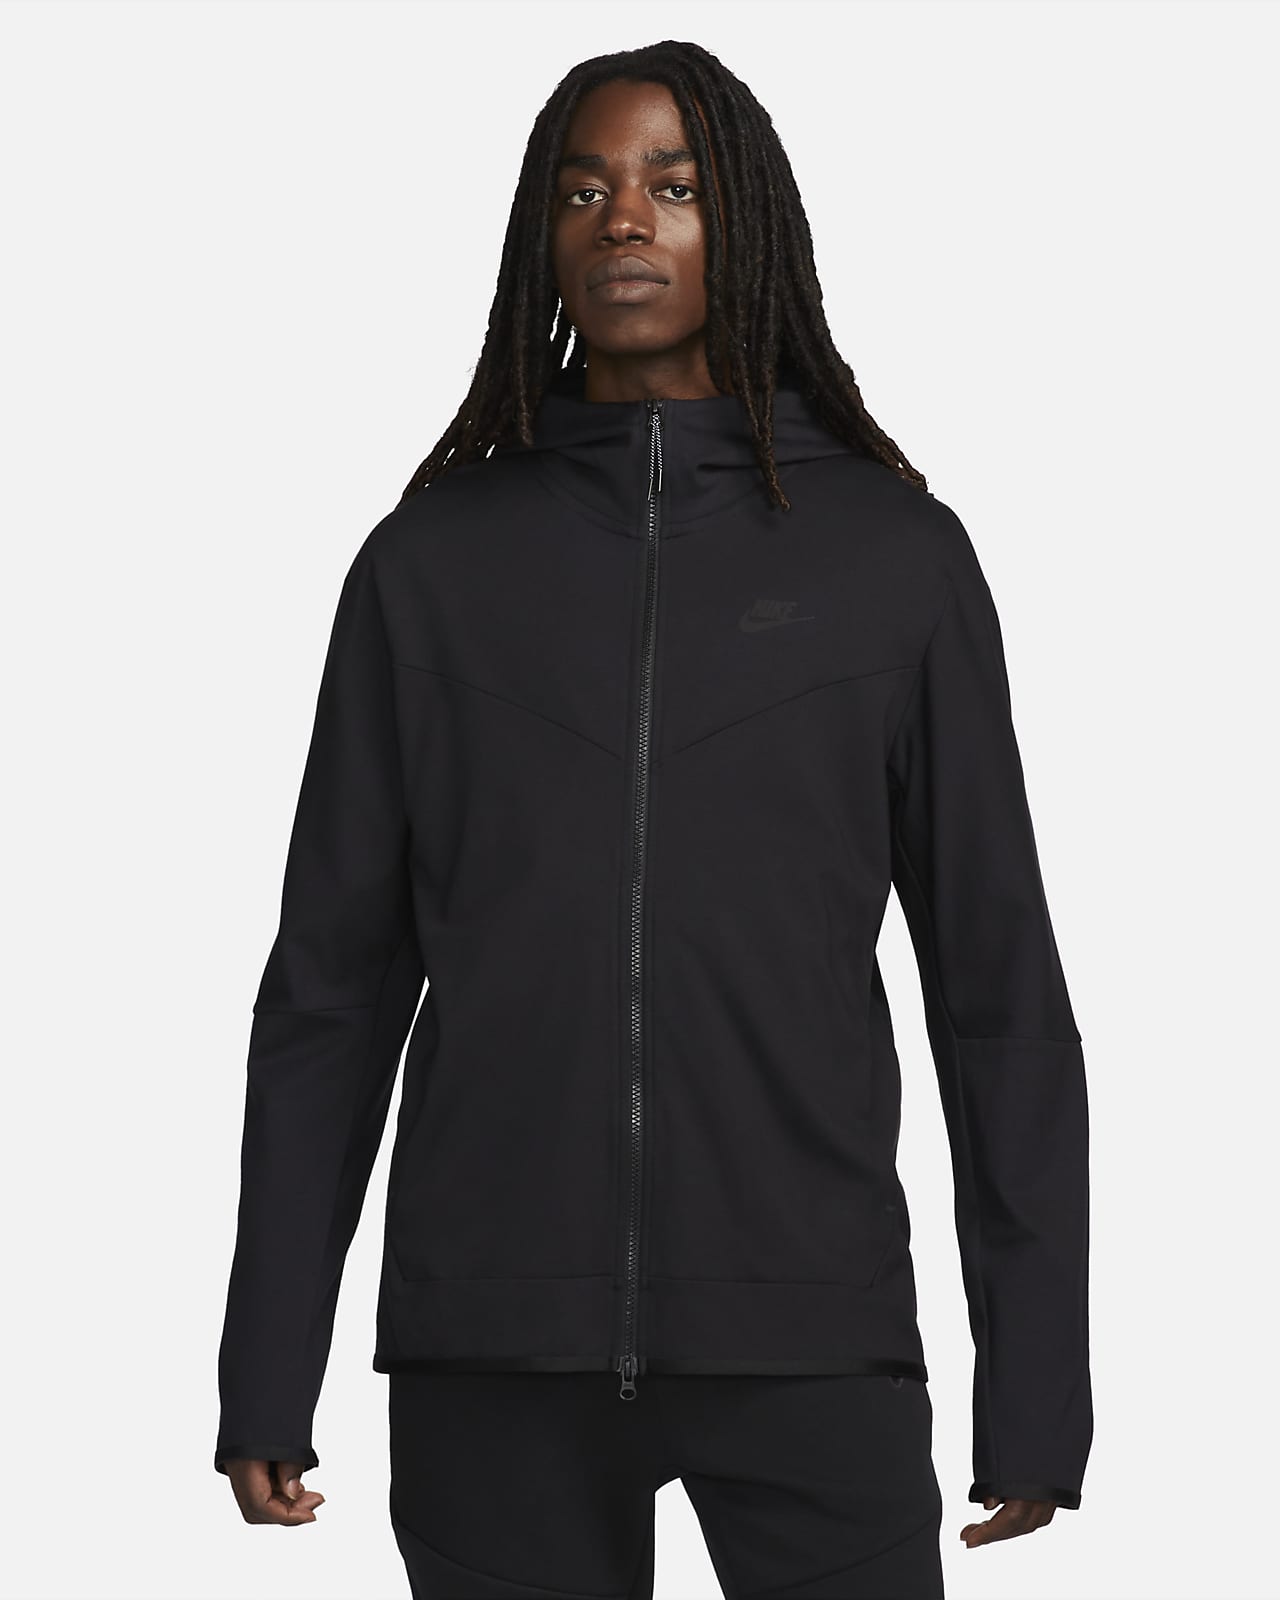 Nike Sportswear Tech Fleece Lightweight Men's Full-Zip Hoodie Sweatshirt. CZ